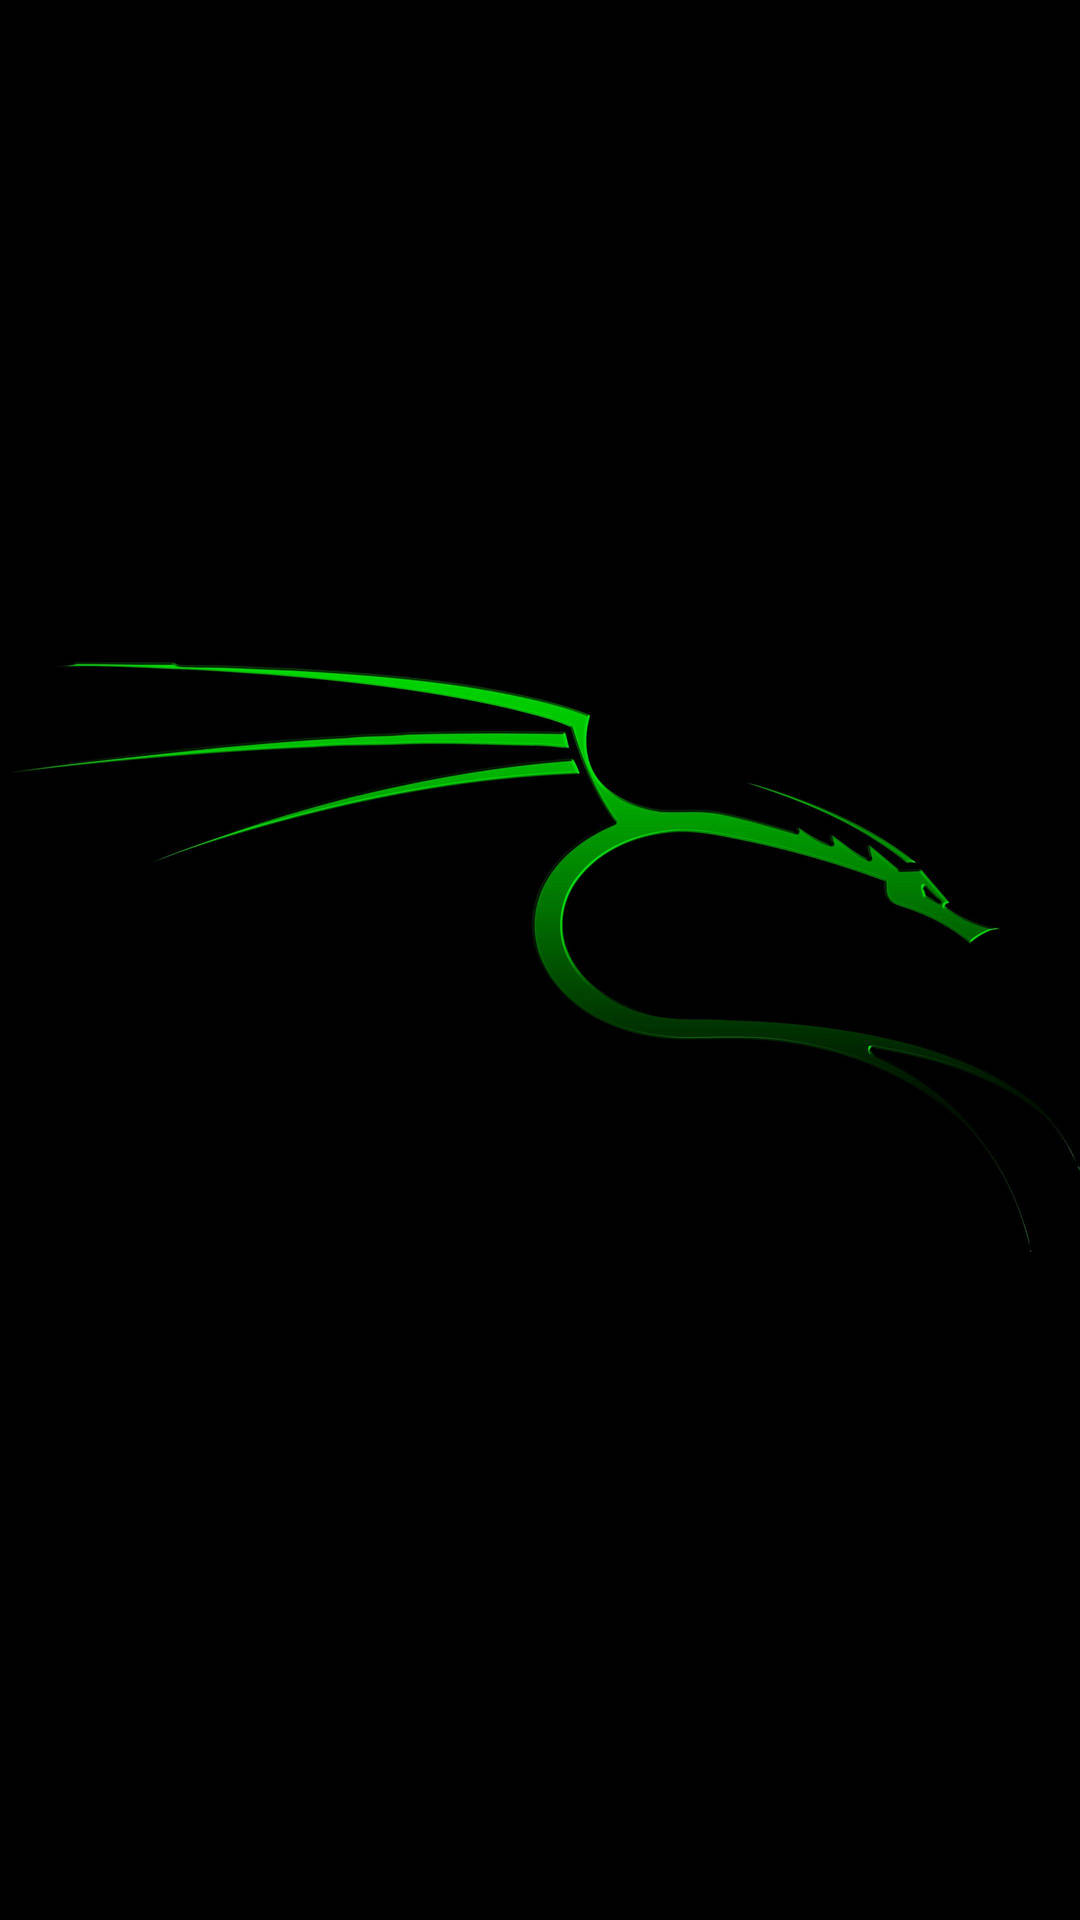 Kali Linux Neon Dragon Wallpaper